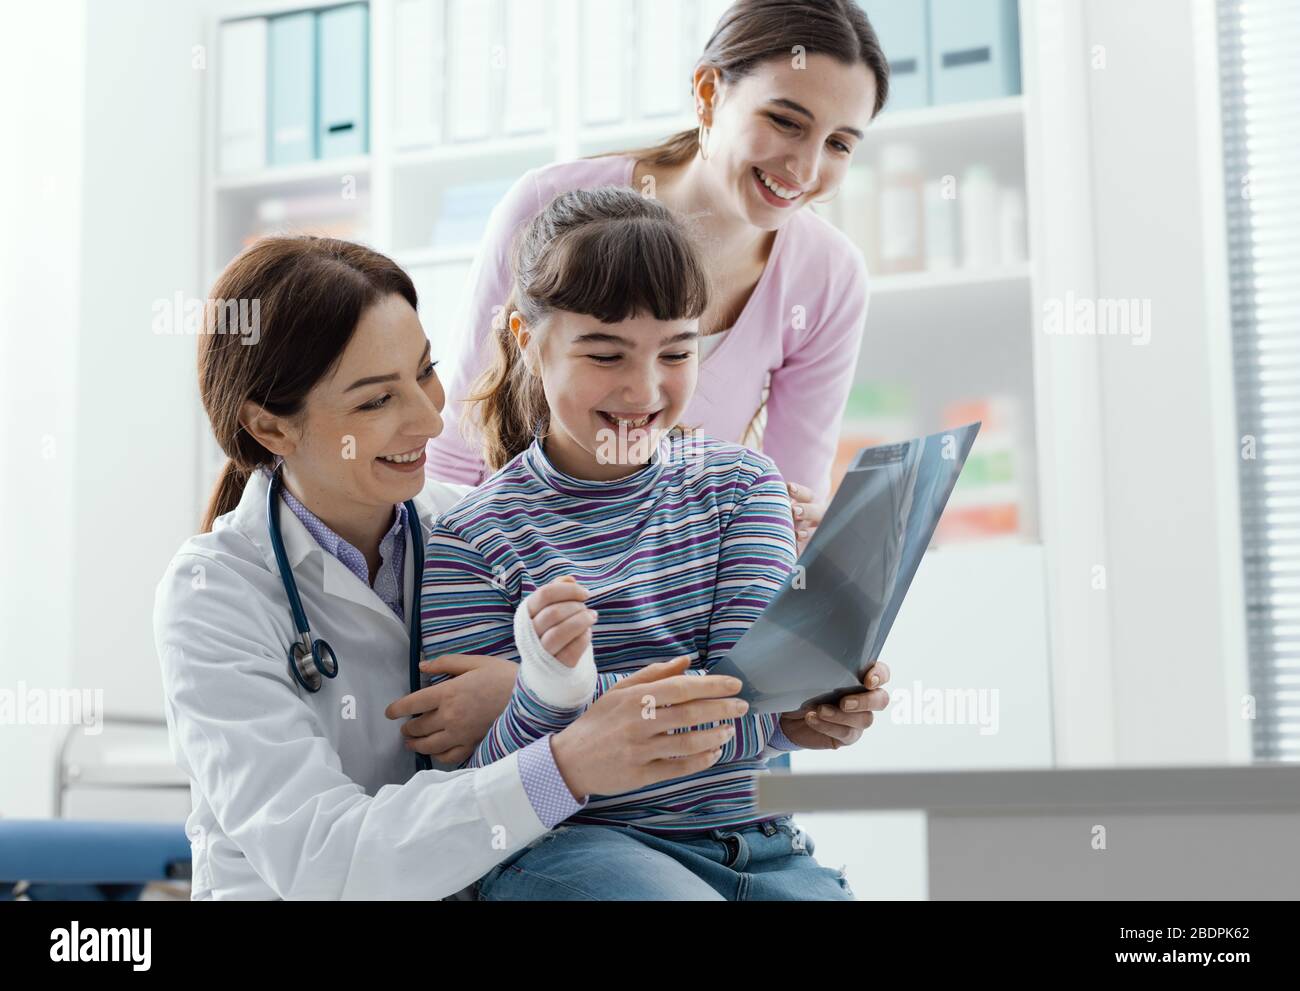 Freundlicher Arzt, der ein Mädchen auf dem Schoß hält und ihr ein Röntgenbild ihres Arms zeigt Stockfoto